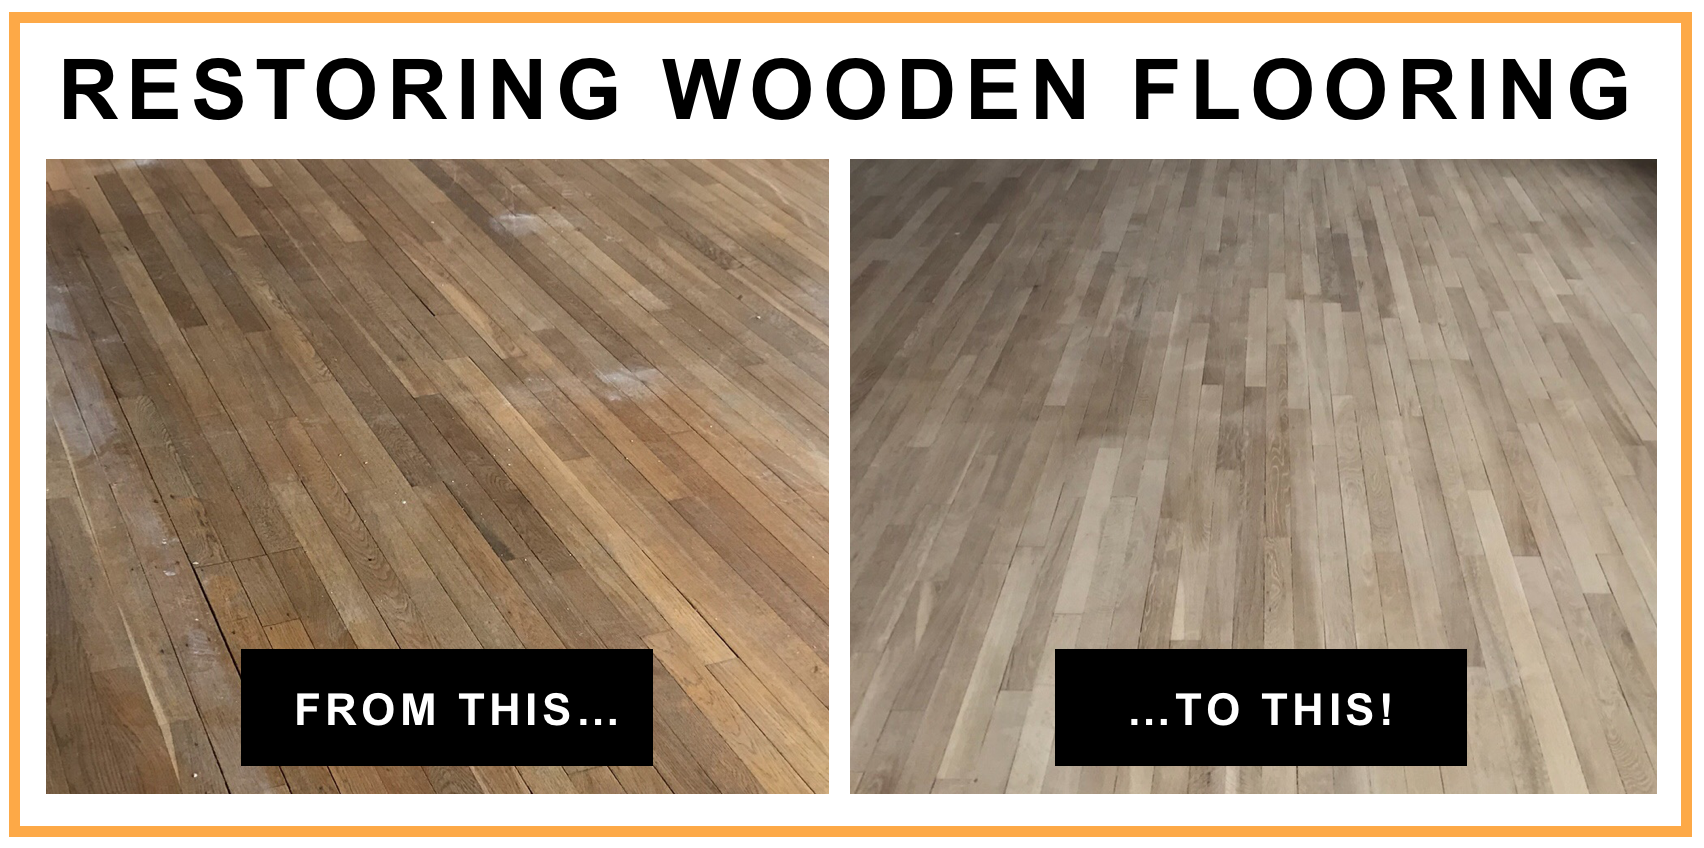 Wood Floor Sanding Leeds Wooden, Hardwood Floor Restoration Companies